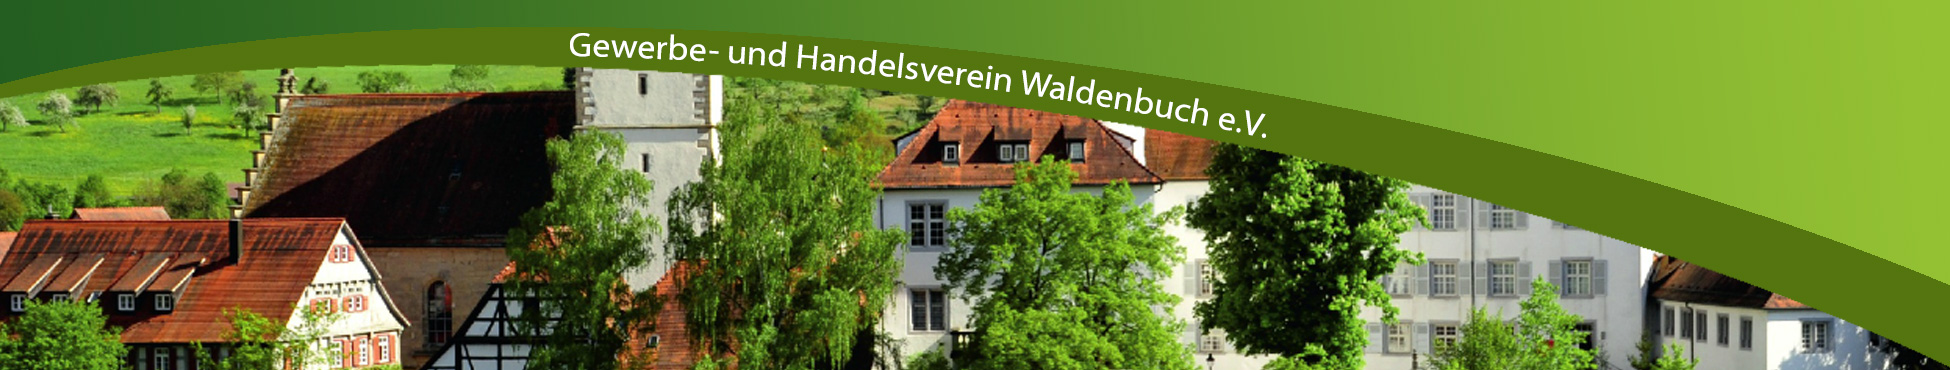 Header-ghv-waldenbuch